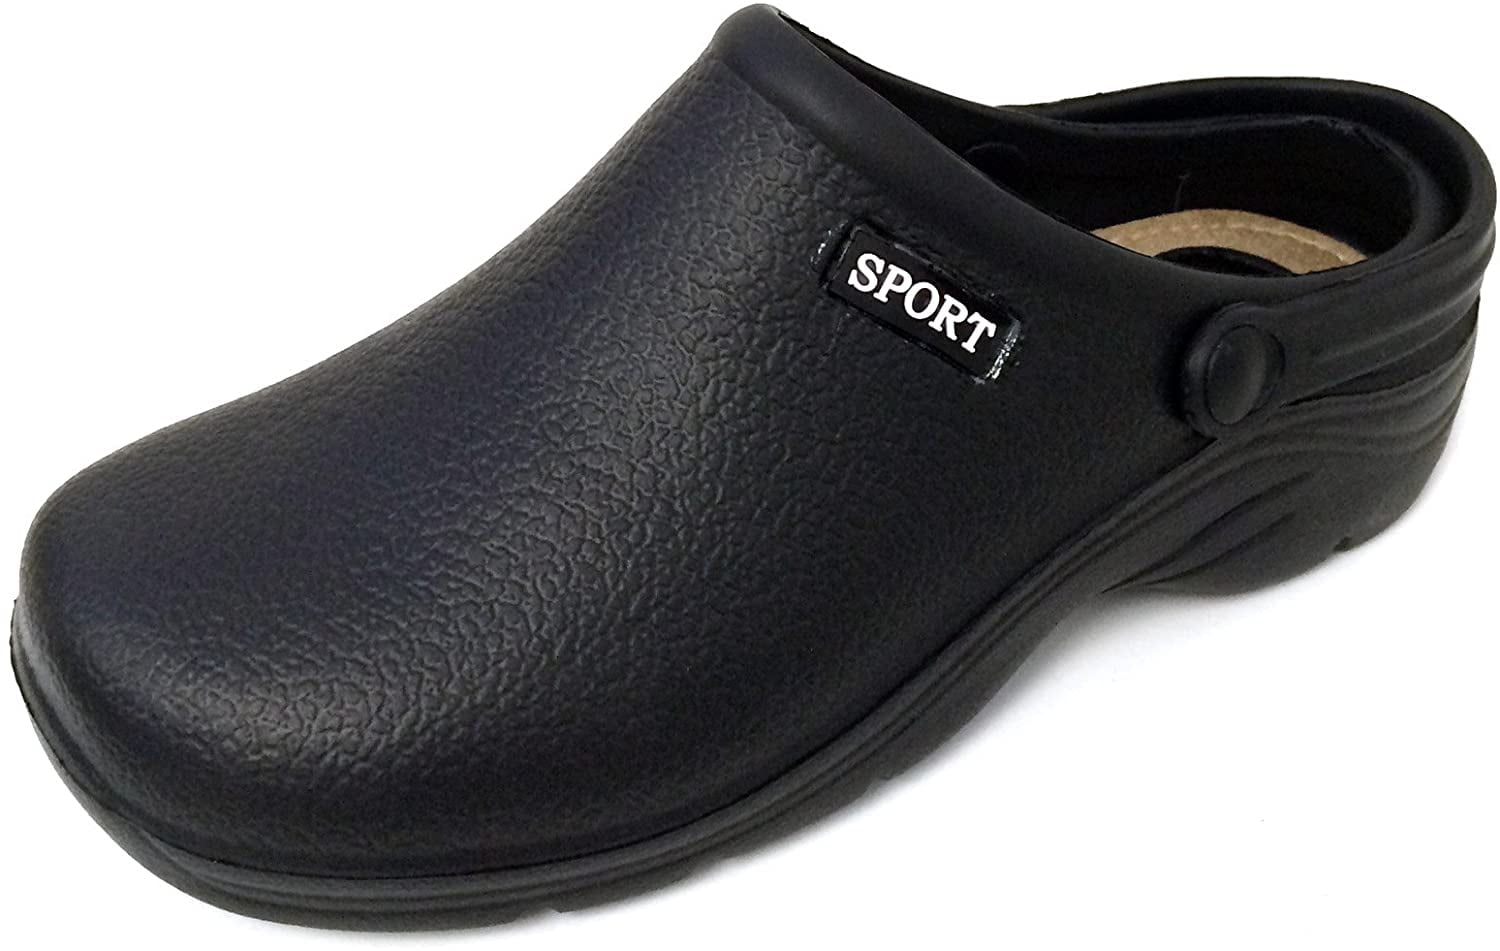 New Men's Clogs Slipper Hospital Garden Shoes Sliders Mules Sizes UK 7 8 9 10 11 